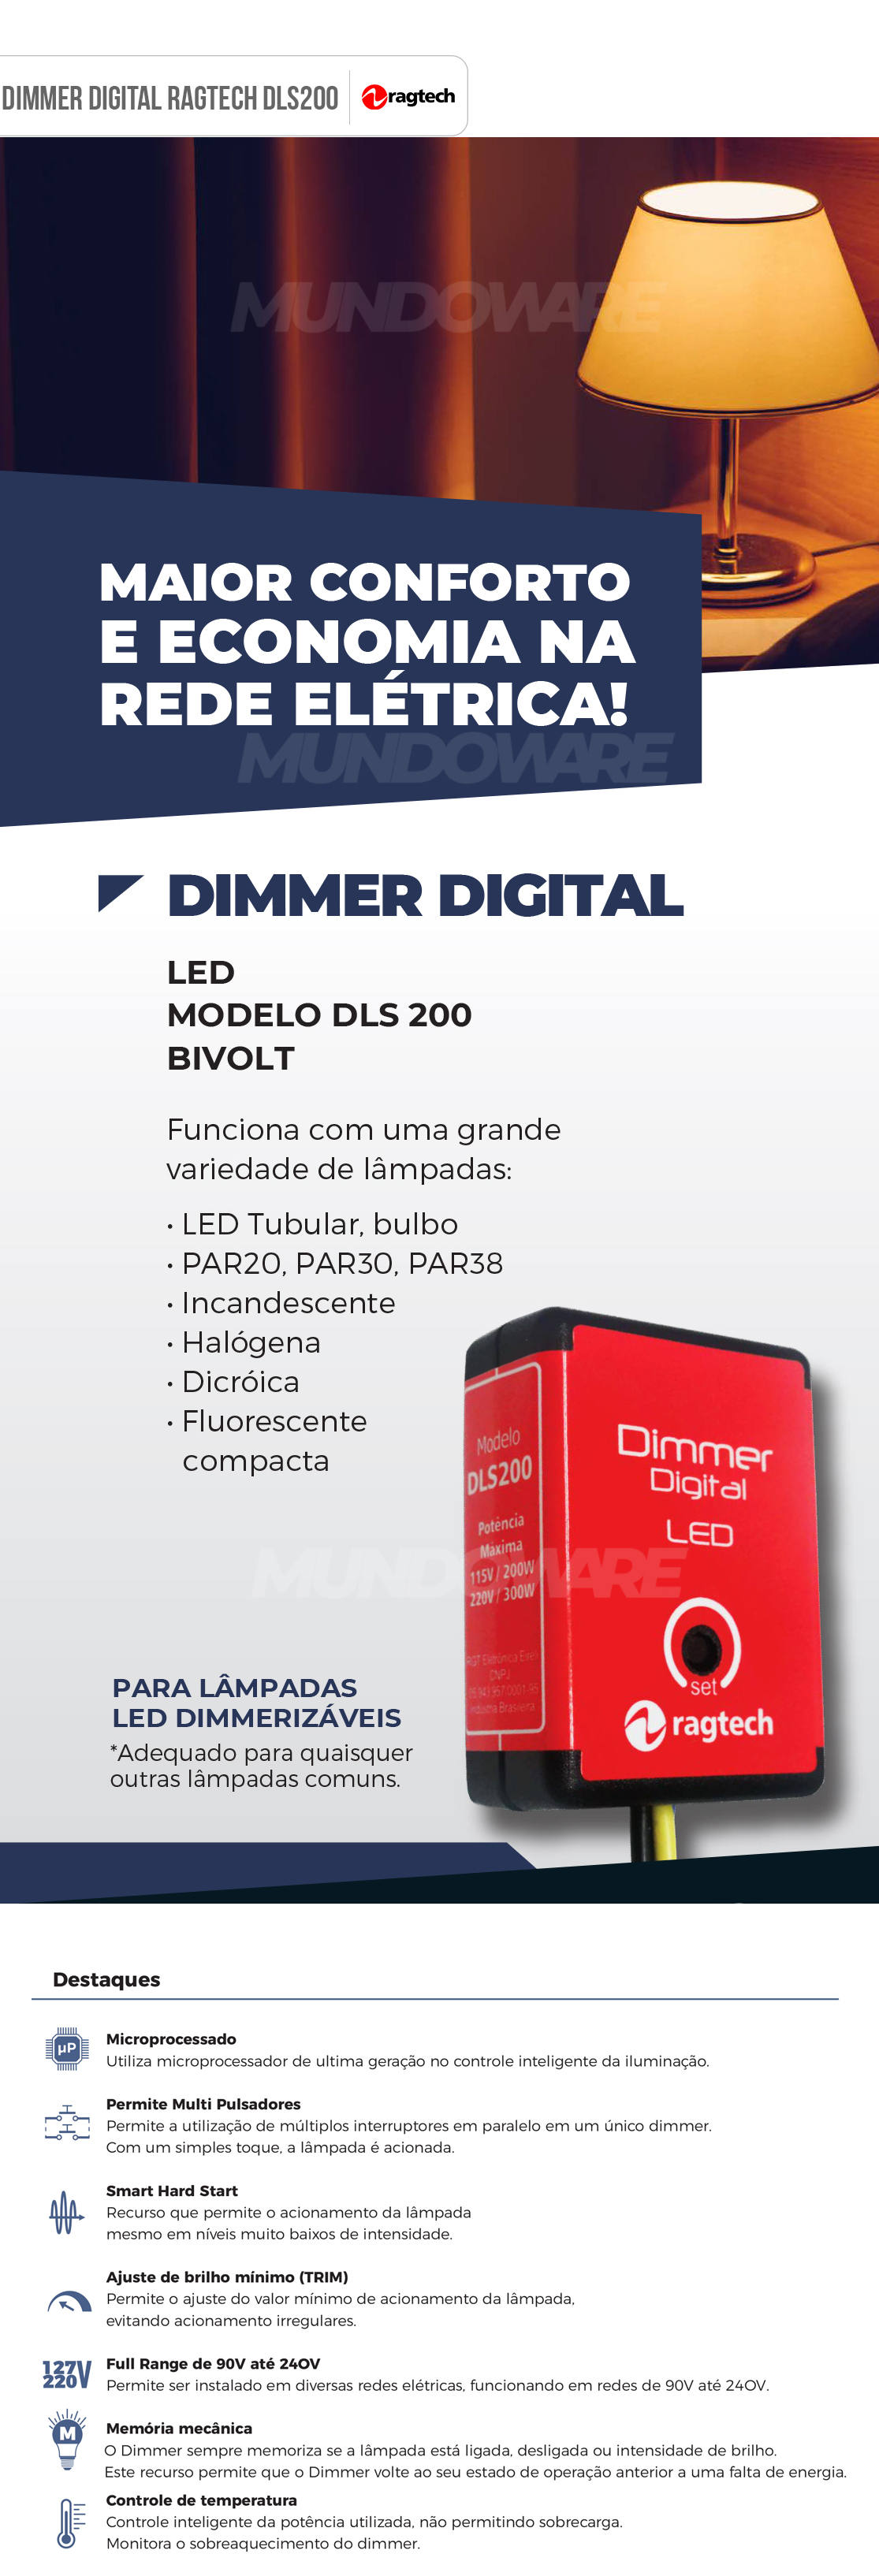 Dimmer Digital LED Bivolt 127V-220V para lâmpadas dimerizáveis LED ou Incandescentes Ragtech DLS200